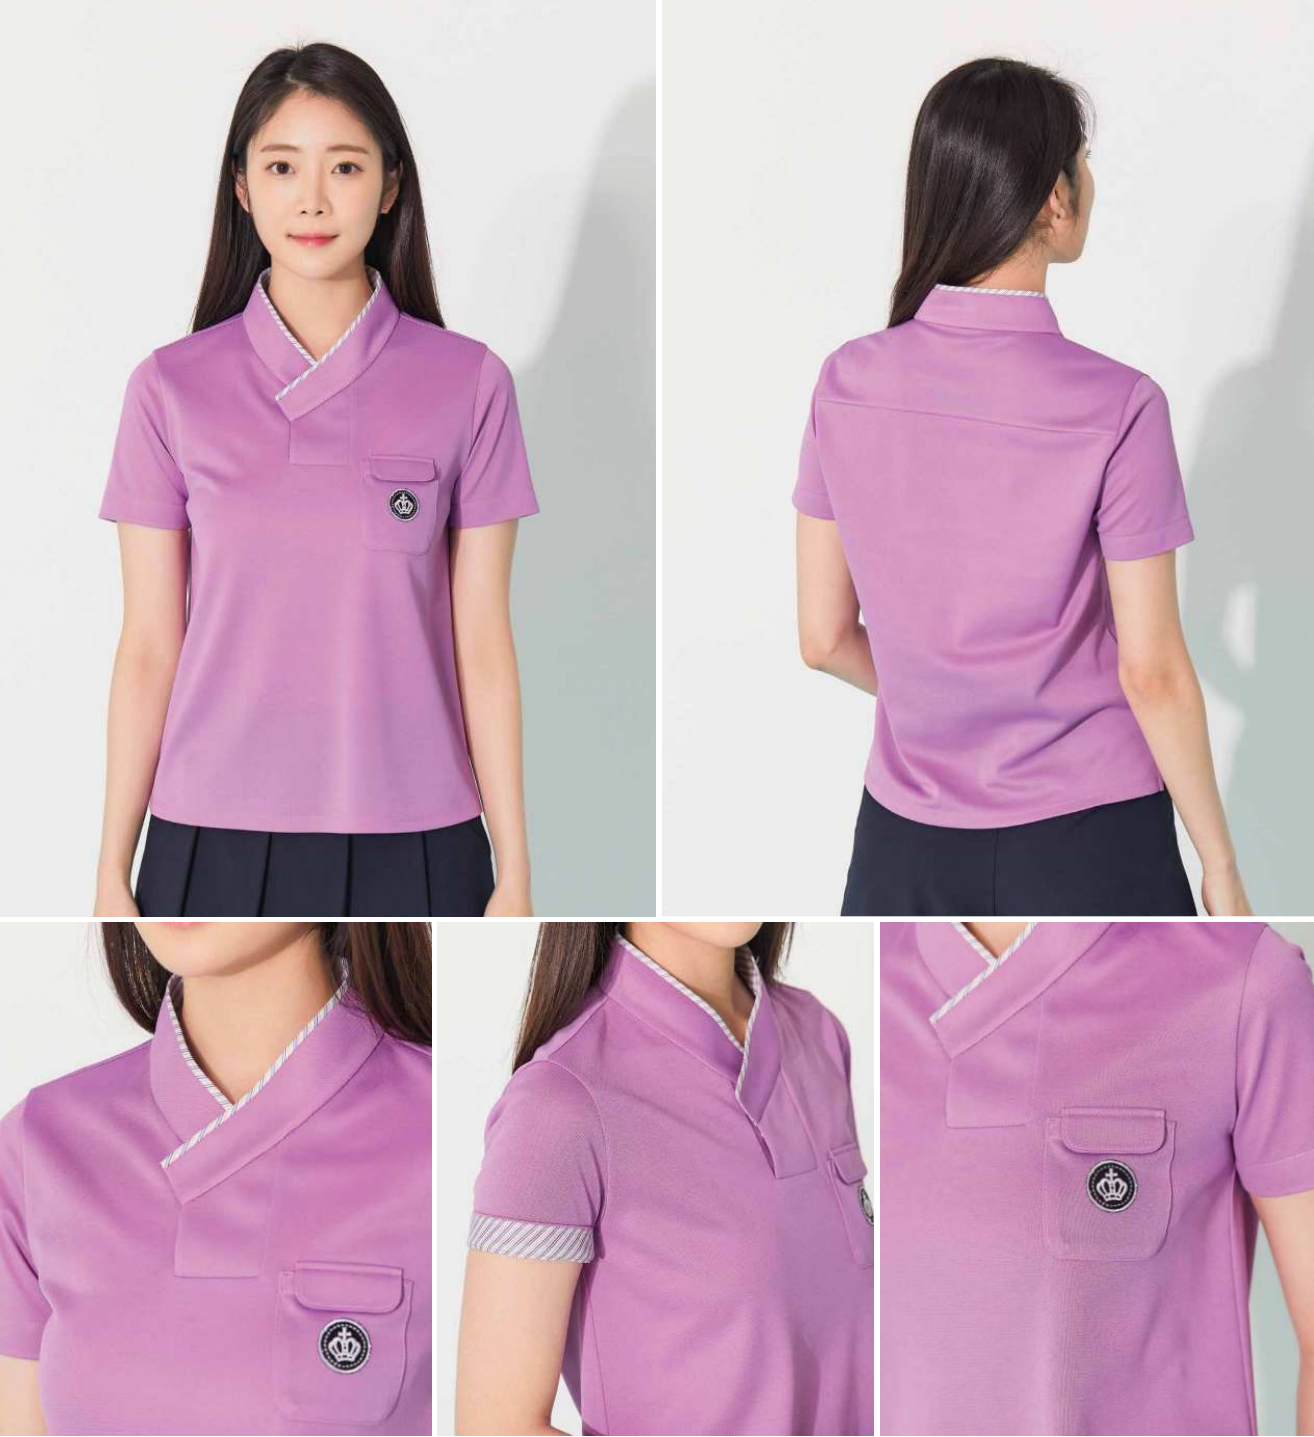 Hanbok Uniforms - Women's active wear shirt